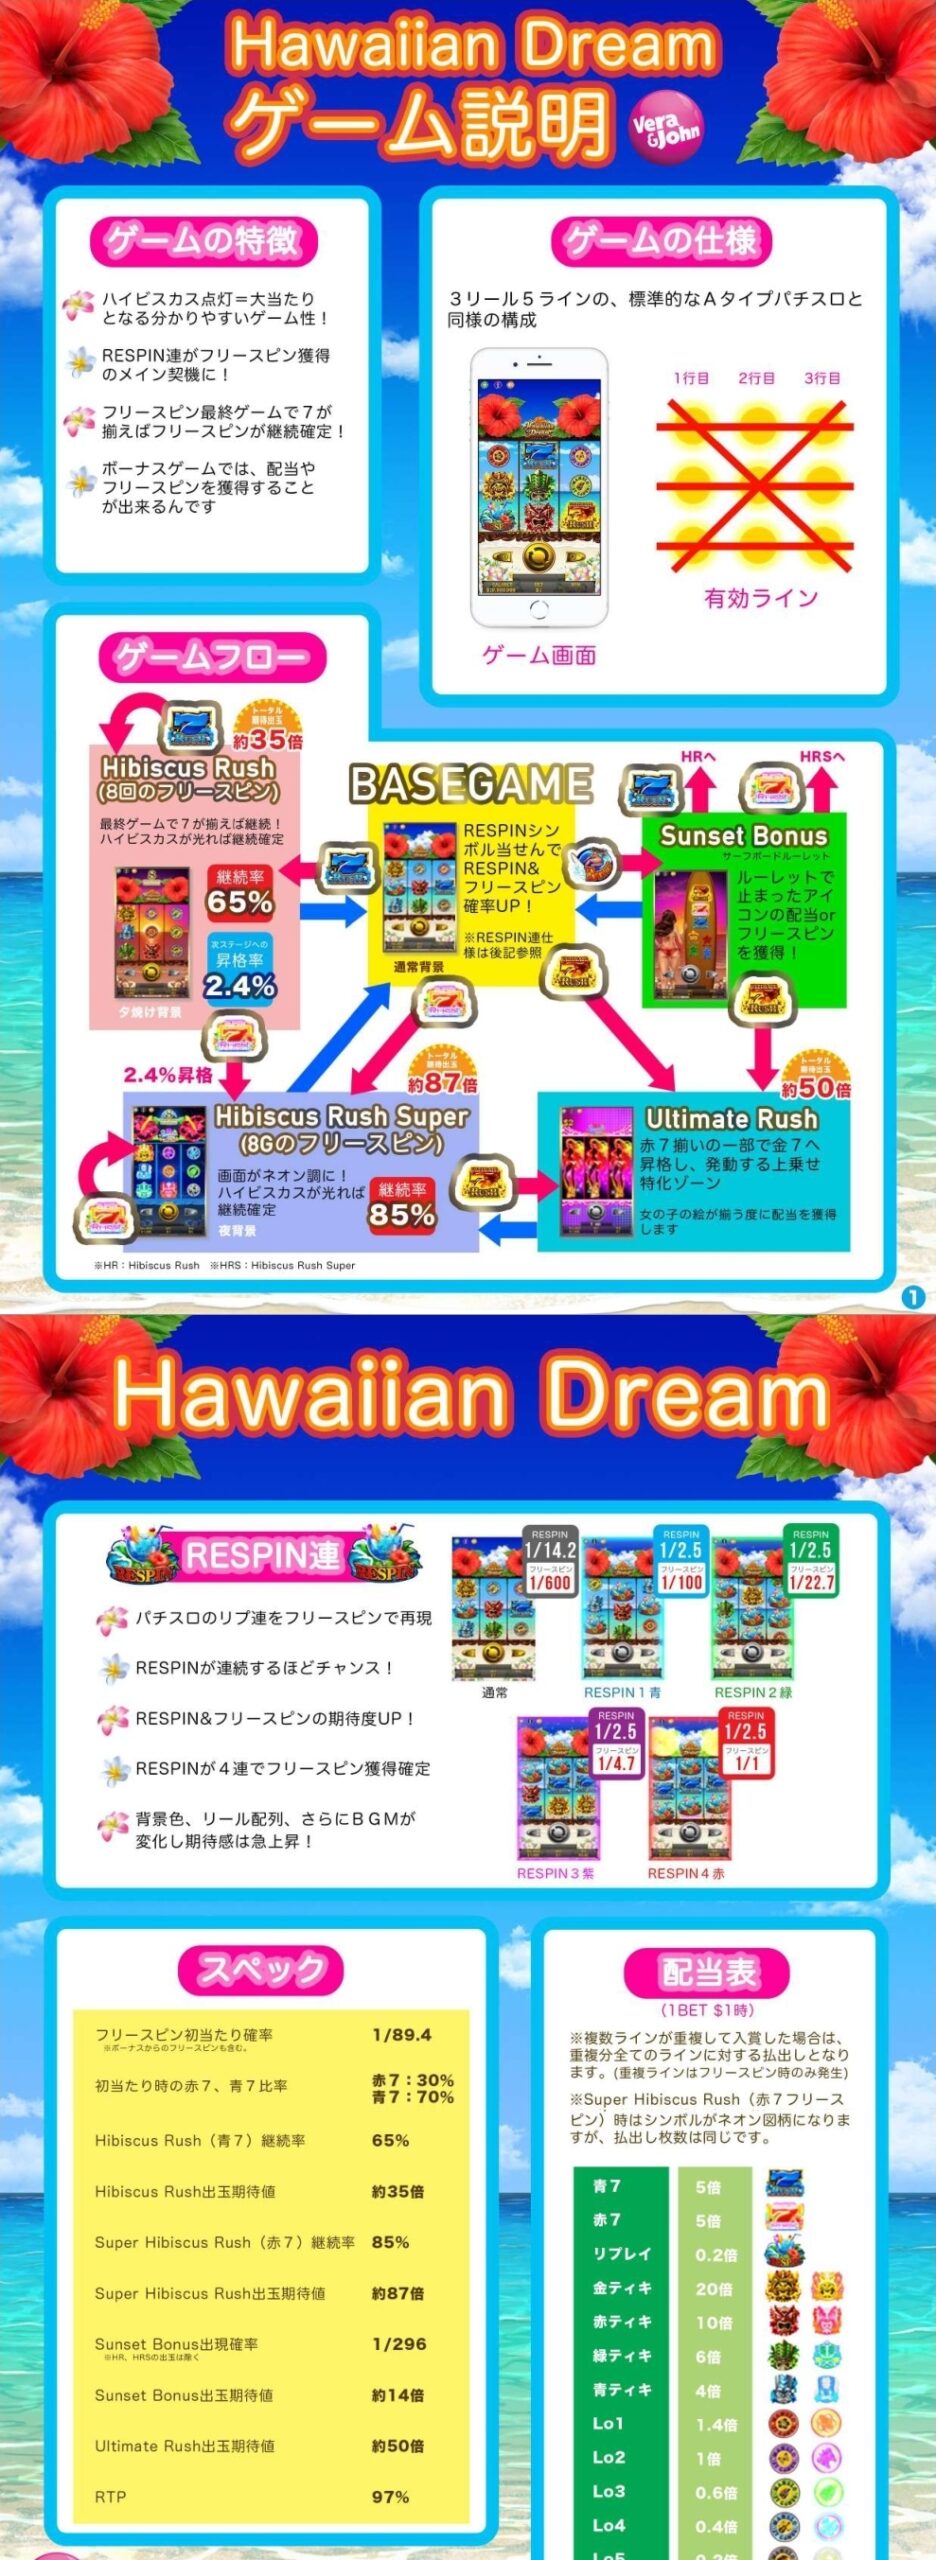 Hawaiian Dream(スロット)の完全攻略マニュアル